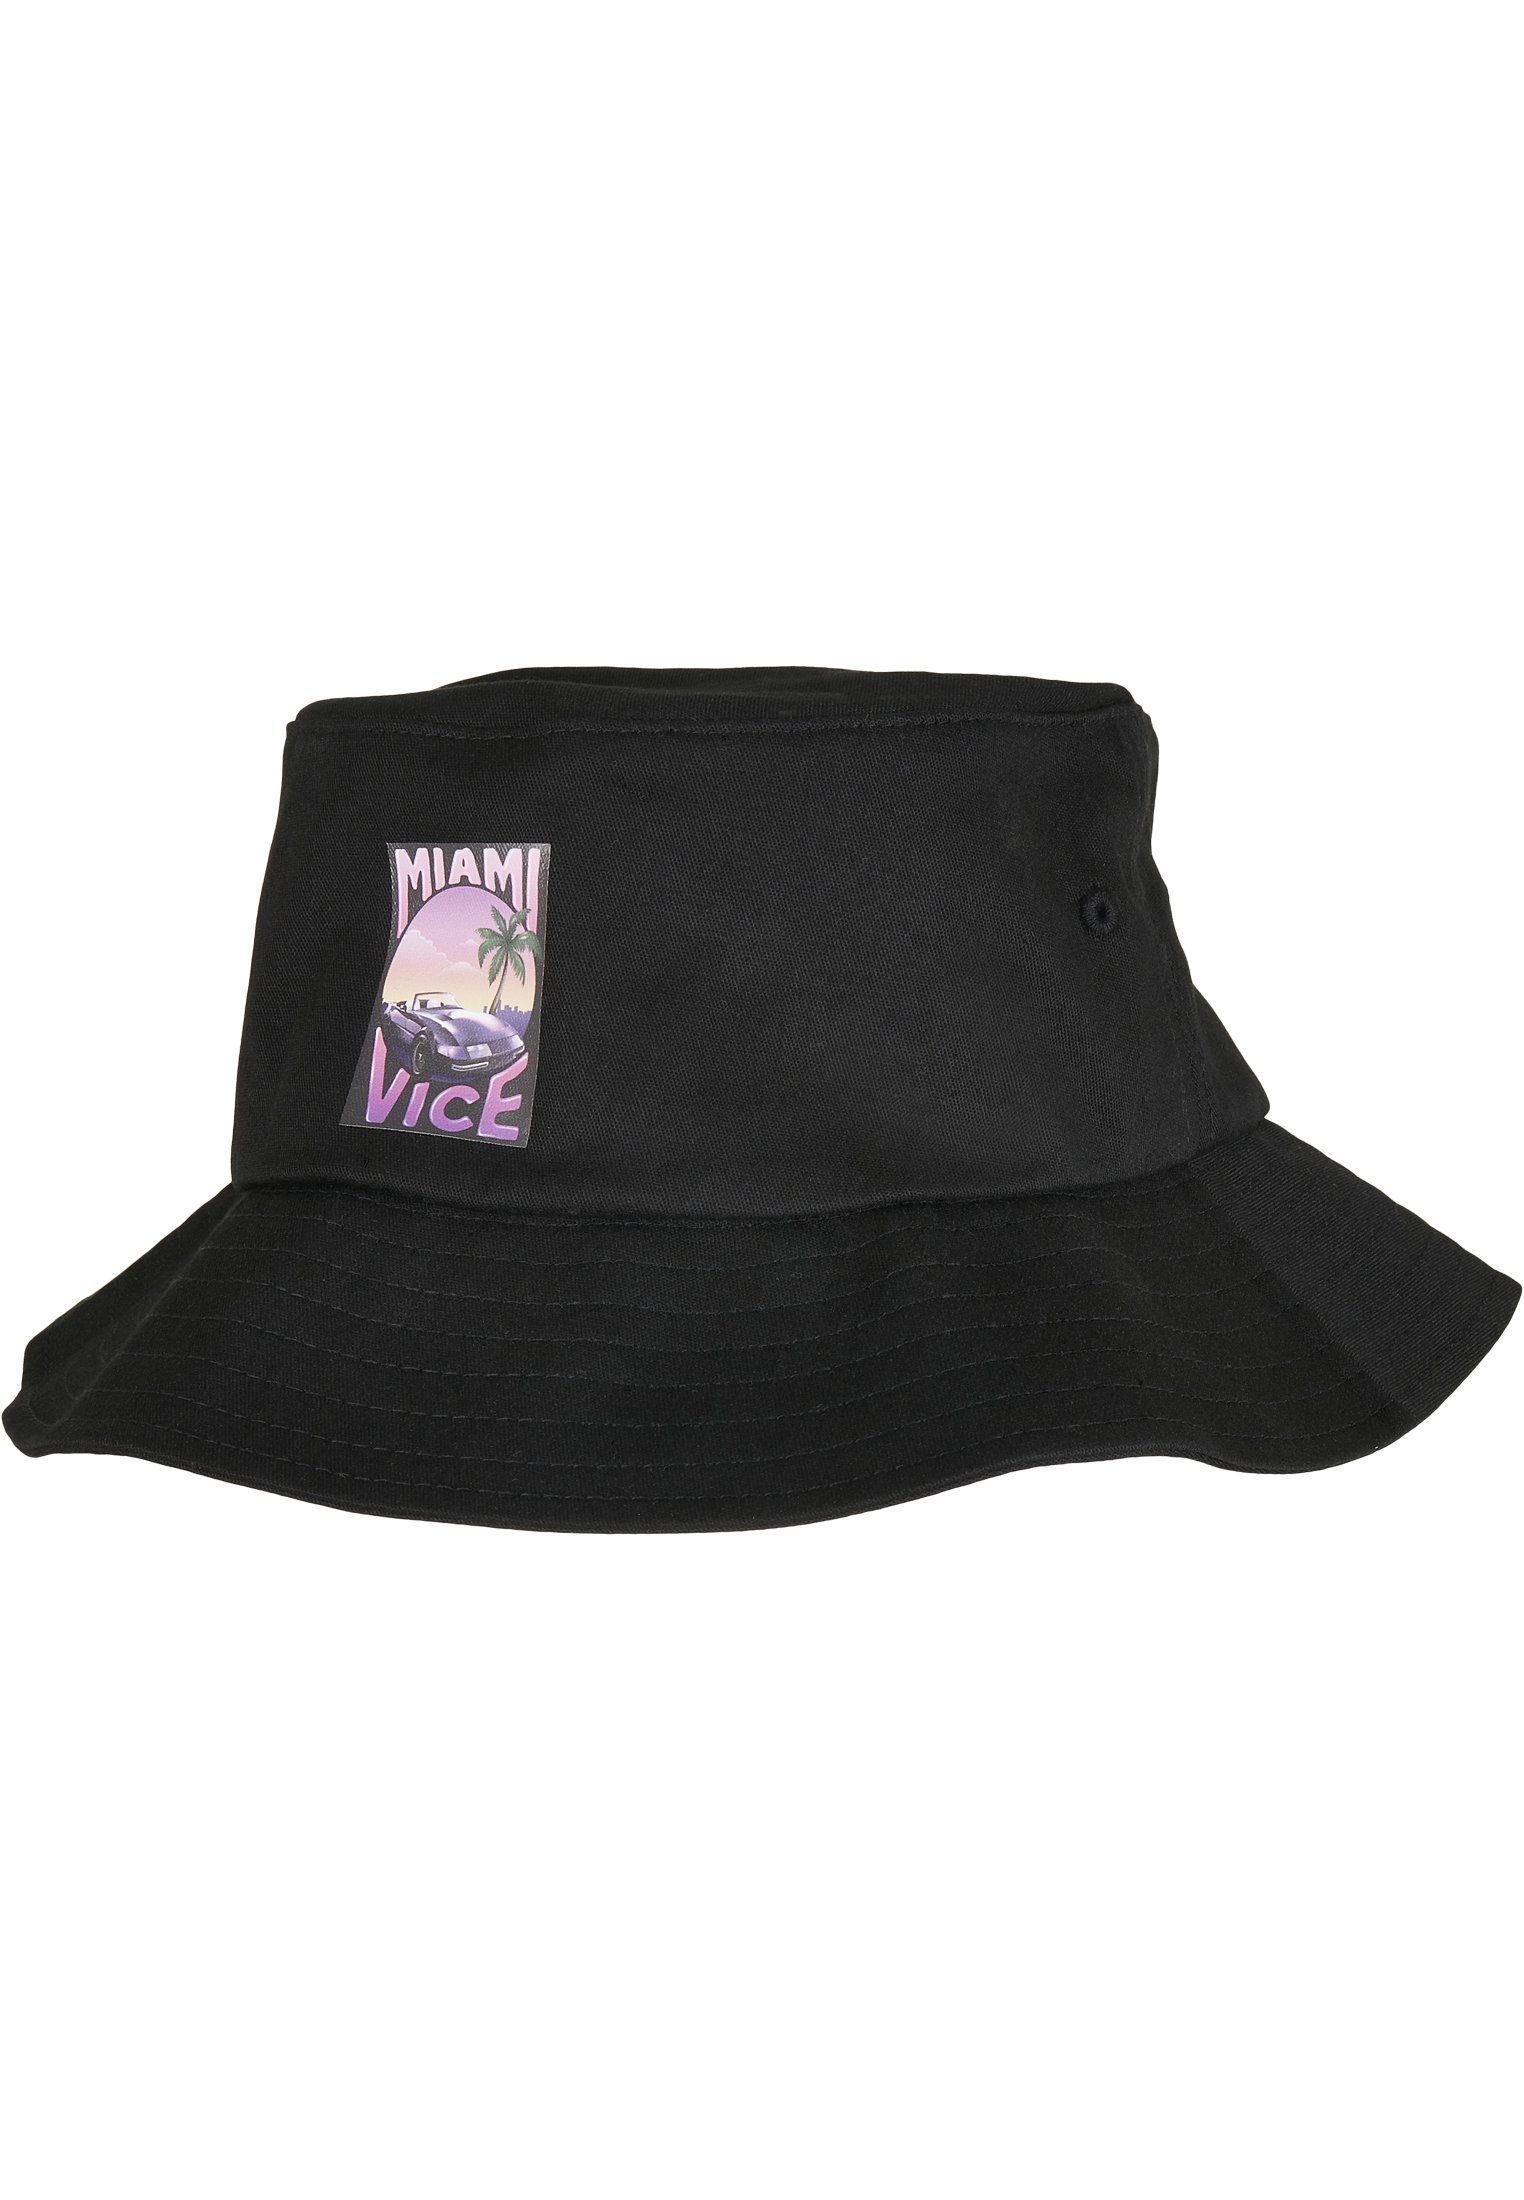 Print Hat Miami Merchcode Vice Hat Cap Bucket Bucket Flex